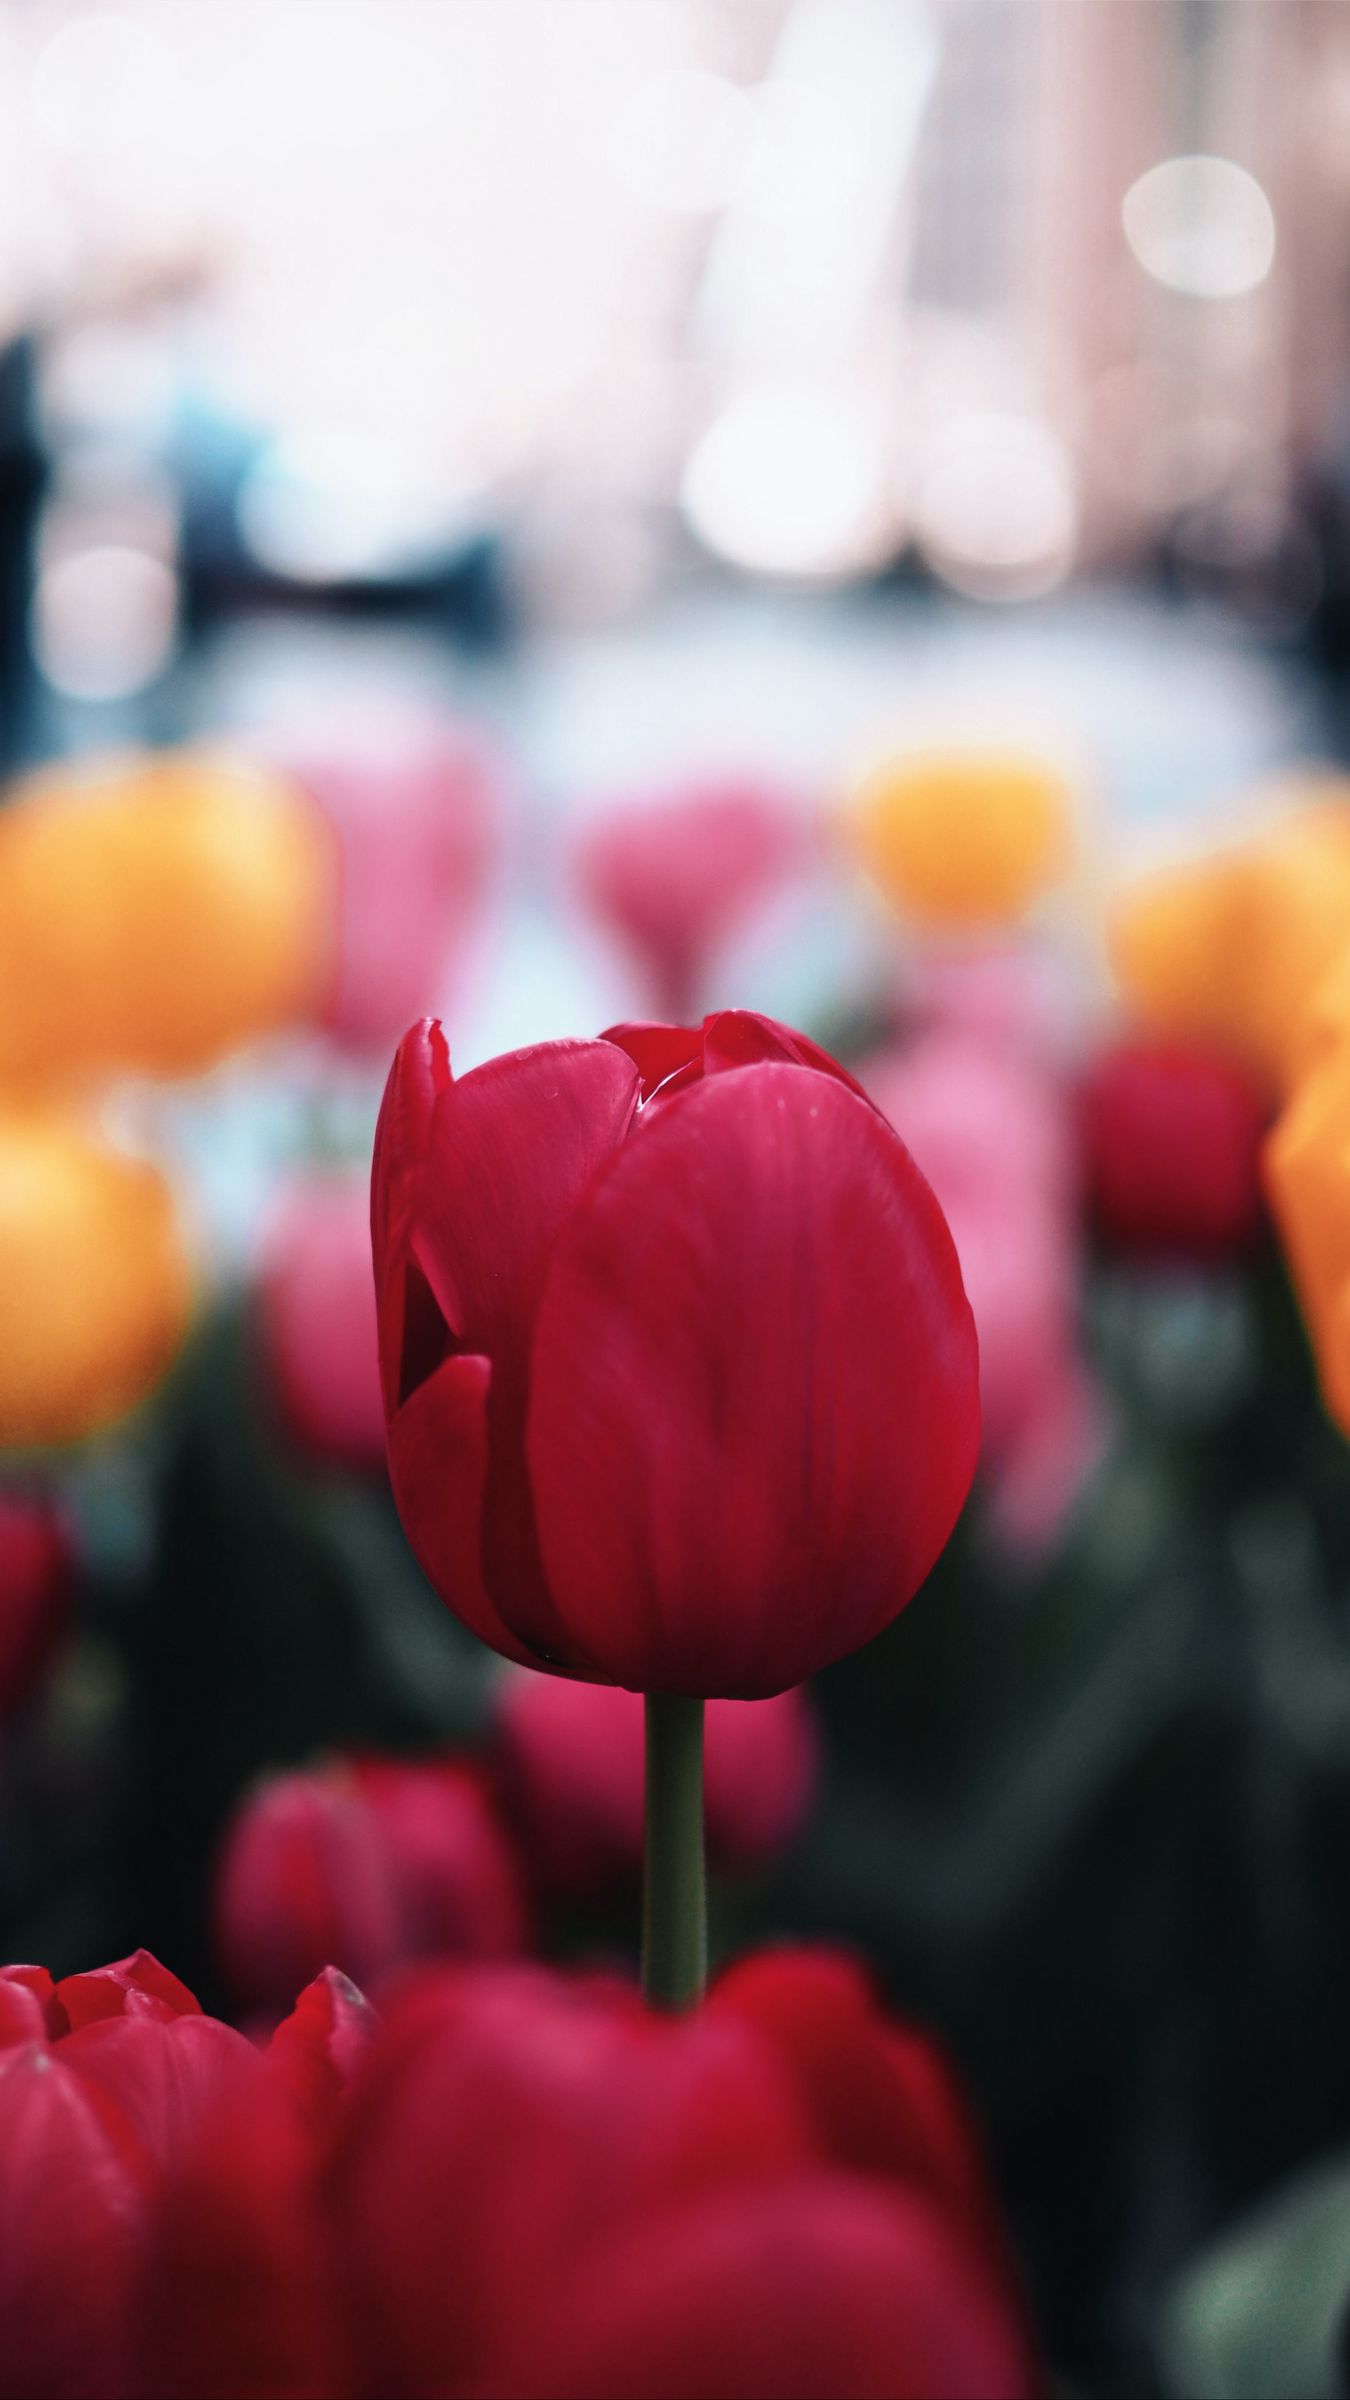 Download hình nền hoa tulip: Hãy tưởng tượng sự dịu dàng và thanh lịch mà một bức tranh toả hình ảnh hoa tulip tuyệt đẹp có thể đem lại cho bạn. Hãy nhanh tay tải xuống hình nền hoa tulip để thỏa mãn tình yêu đối với loài hoa này và làm mới không gian cho màn hình của bạn.